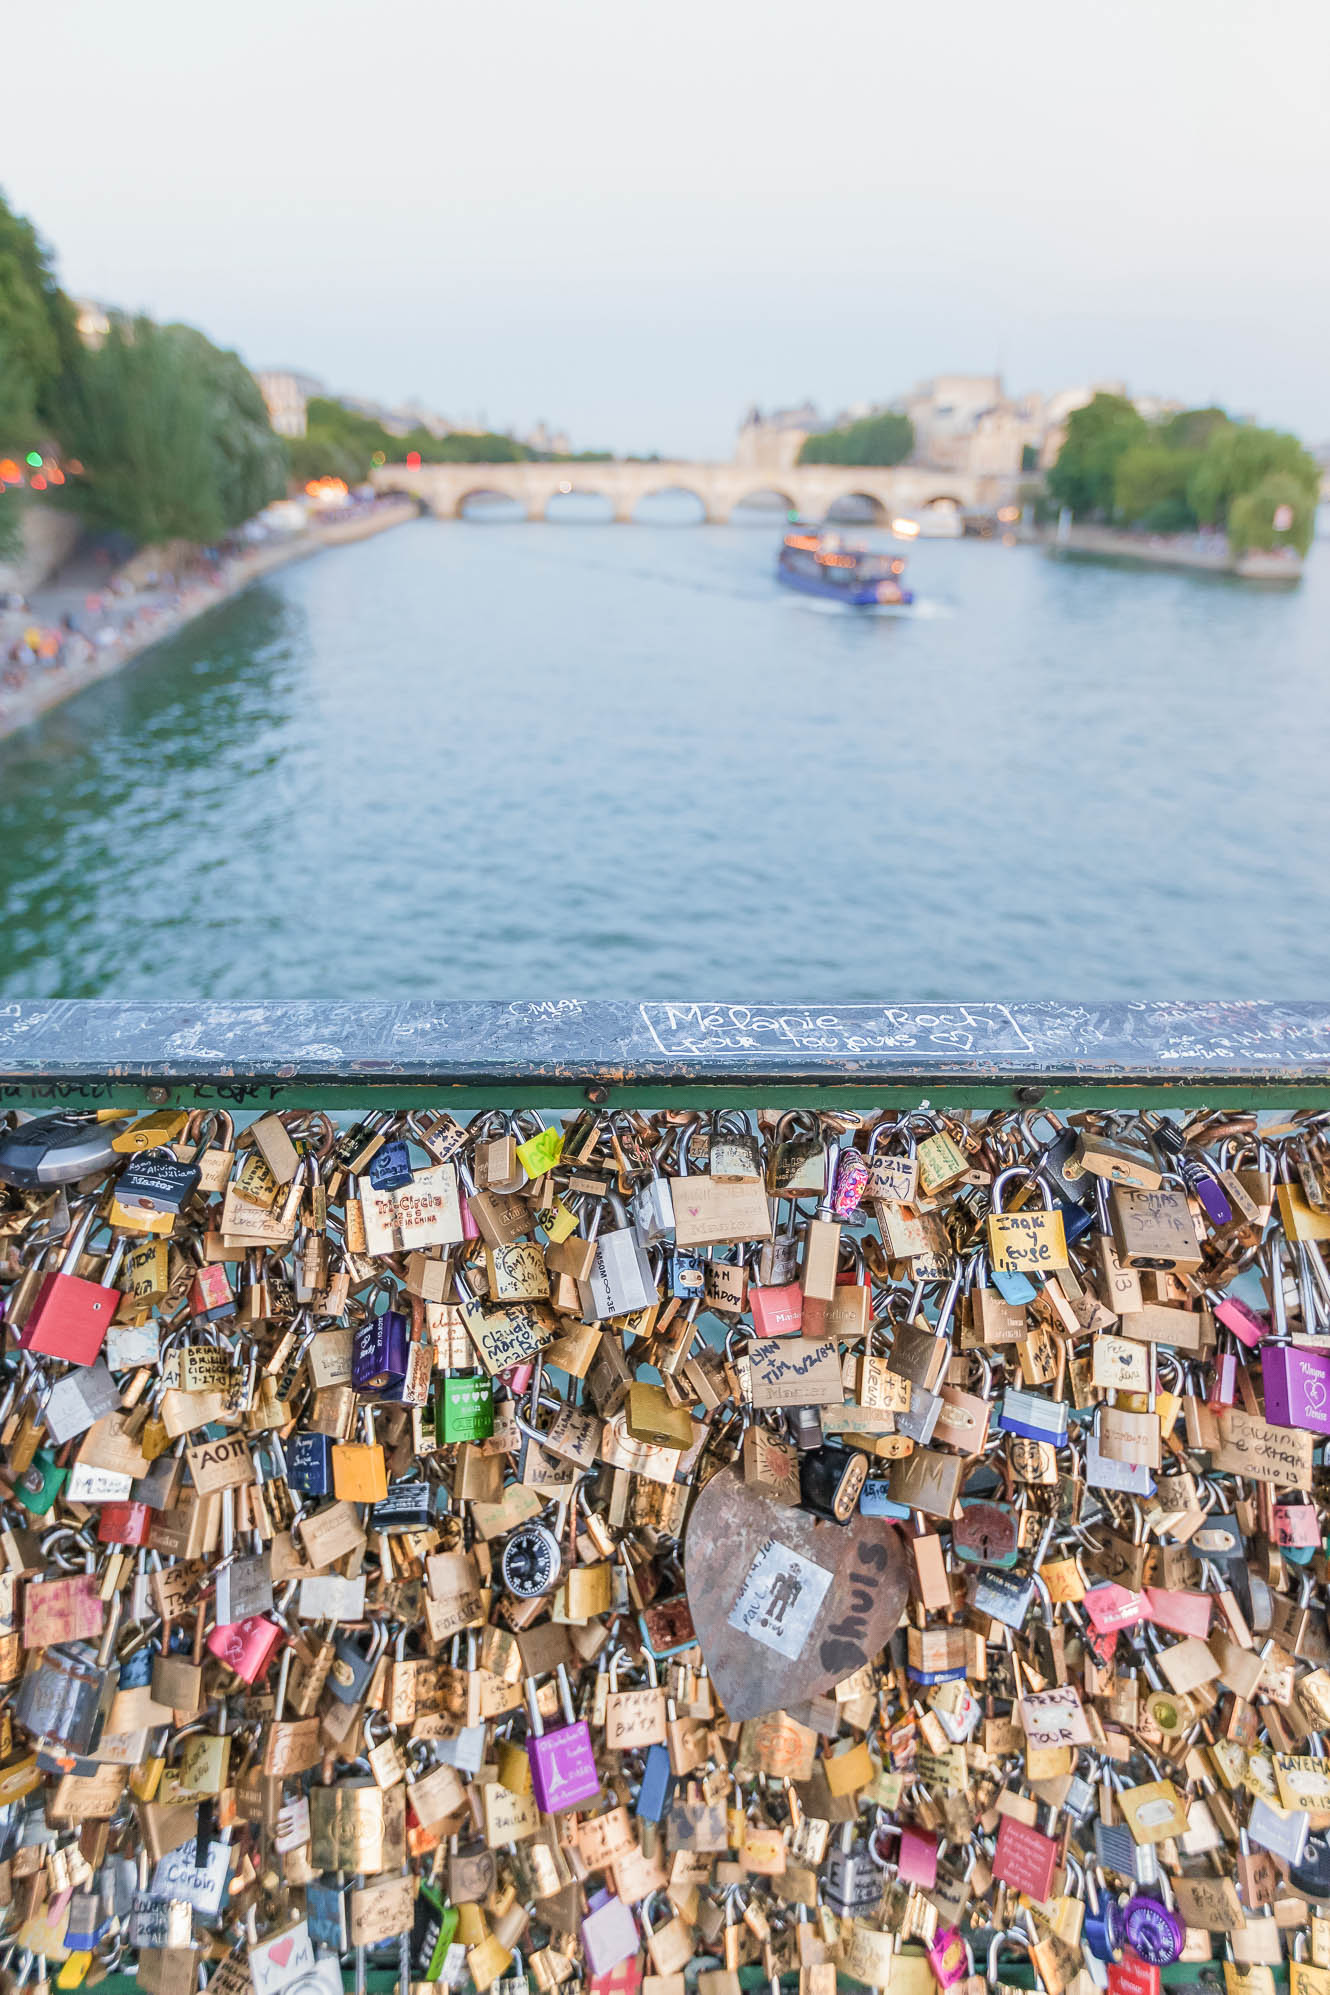 Love lock bridge in Paris, France